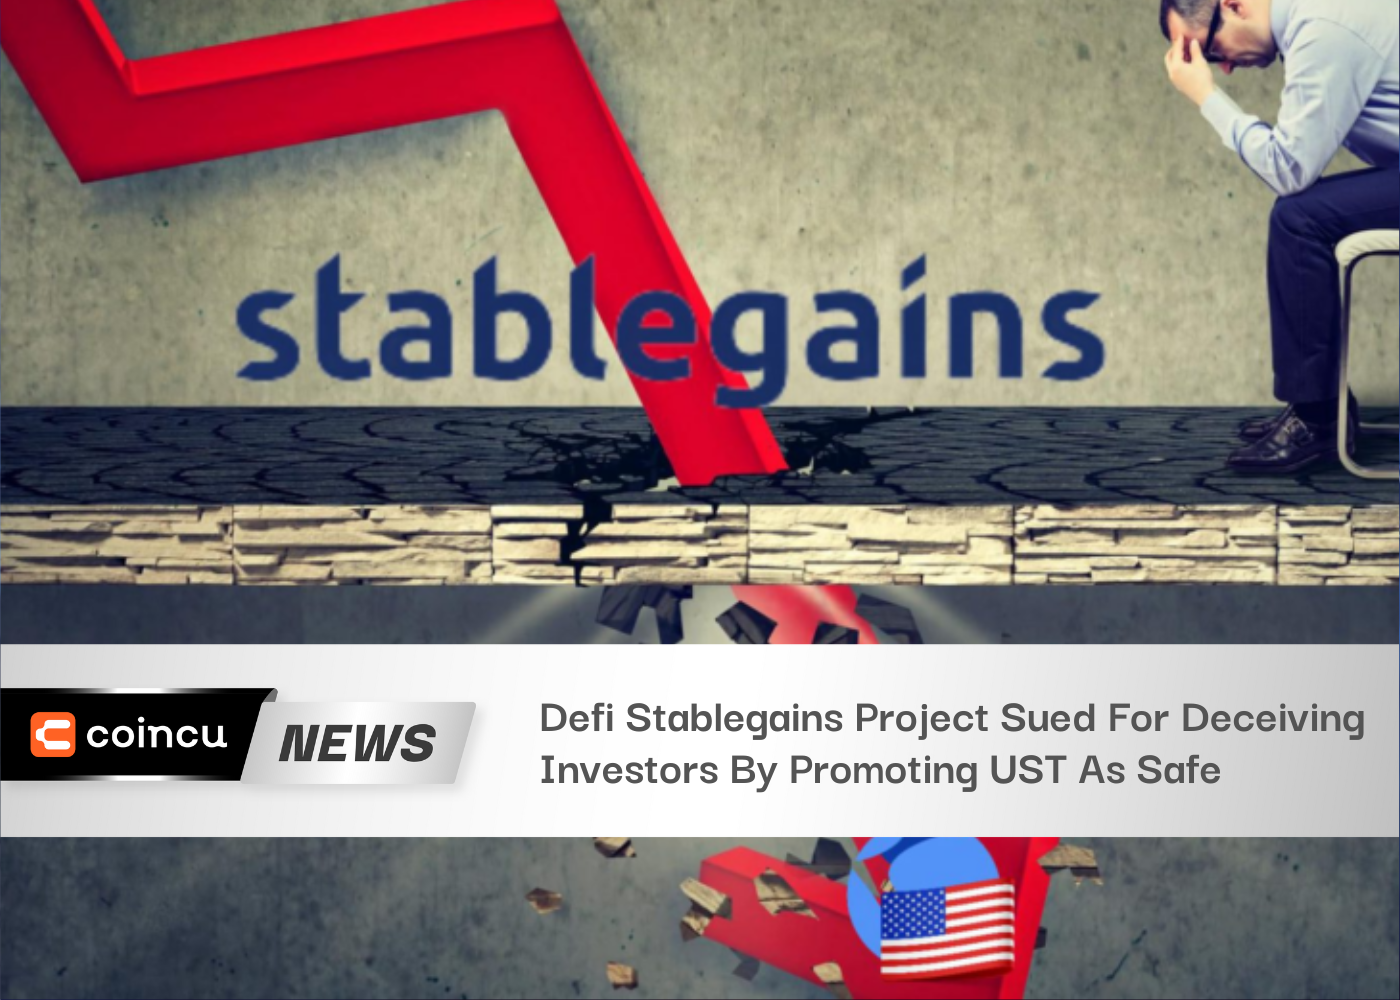 Defiステーブルゲインズプロジェクト、USTを安全だと宣伝して投資家を欺いたとして訴えられる